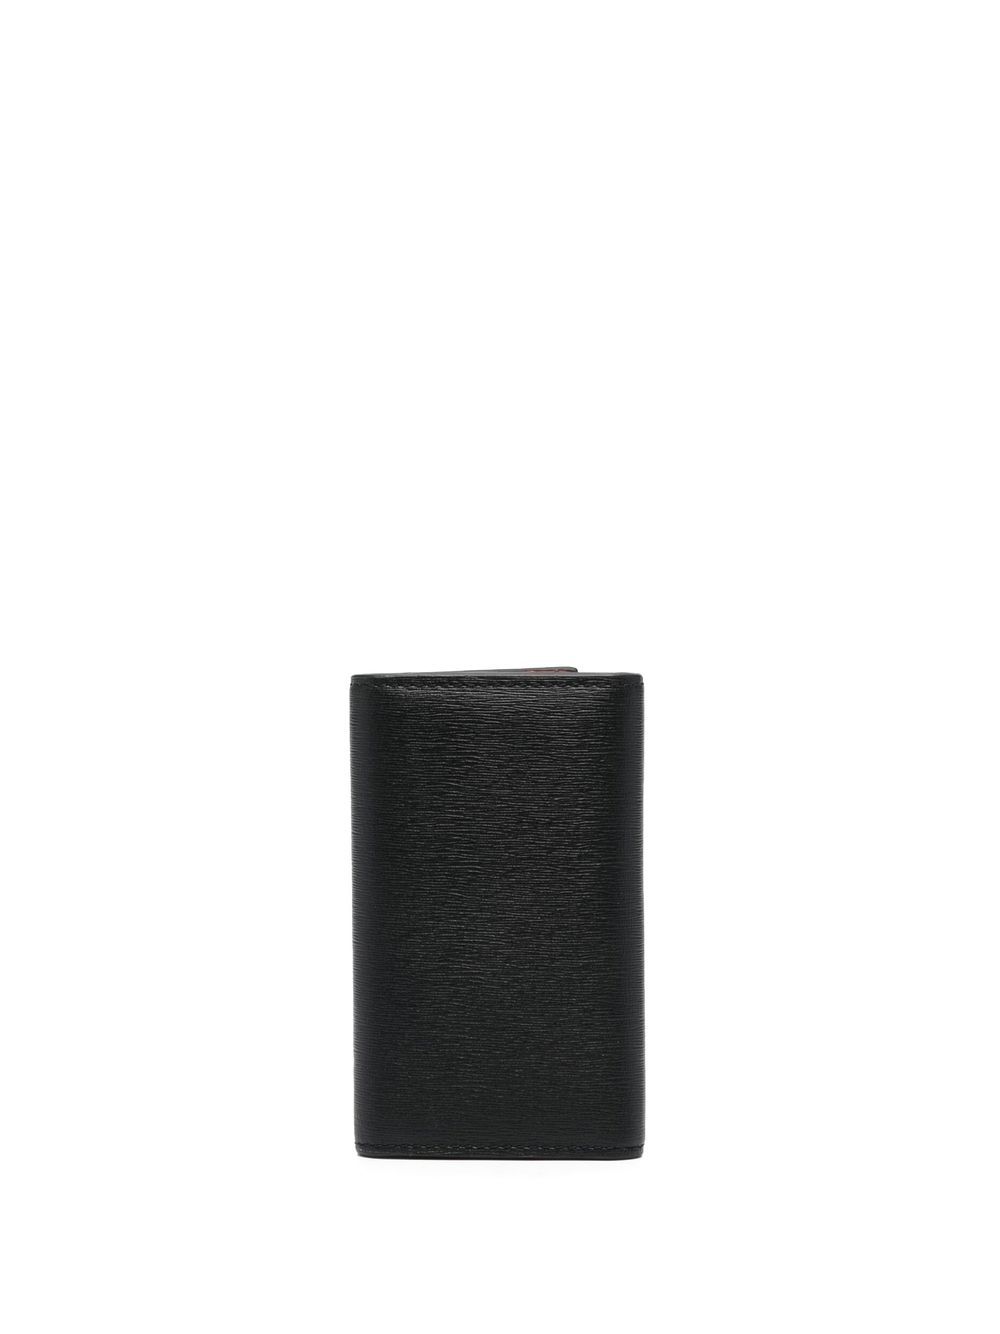 Paul Smith tri-fold Leather Wallet - Farfetch